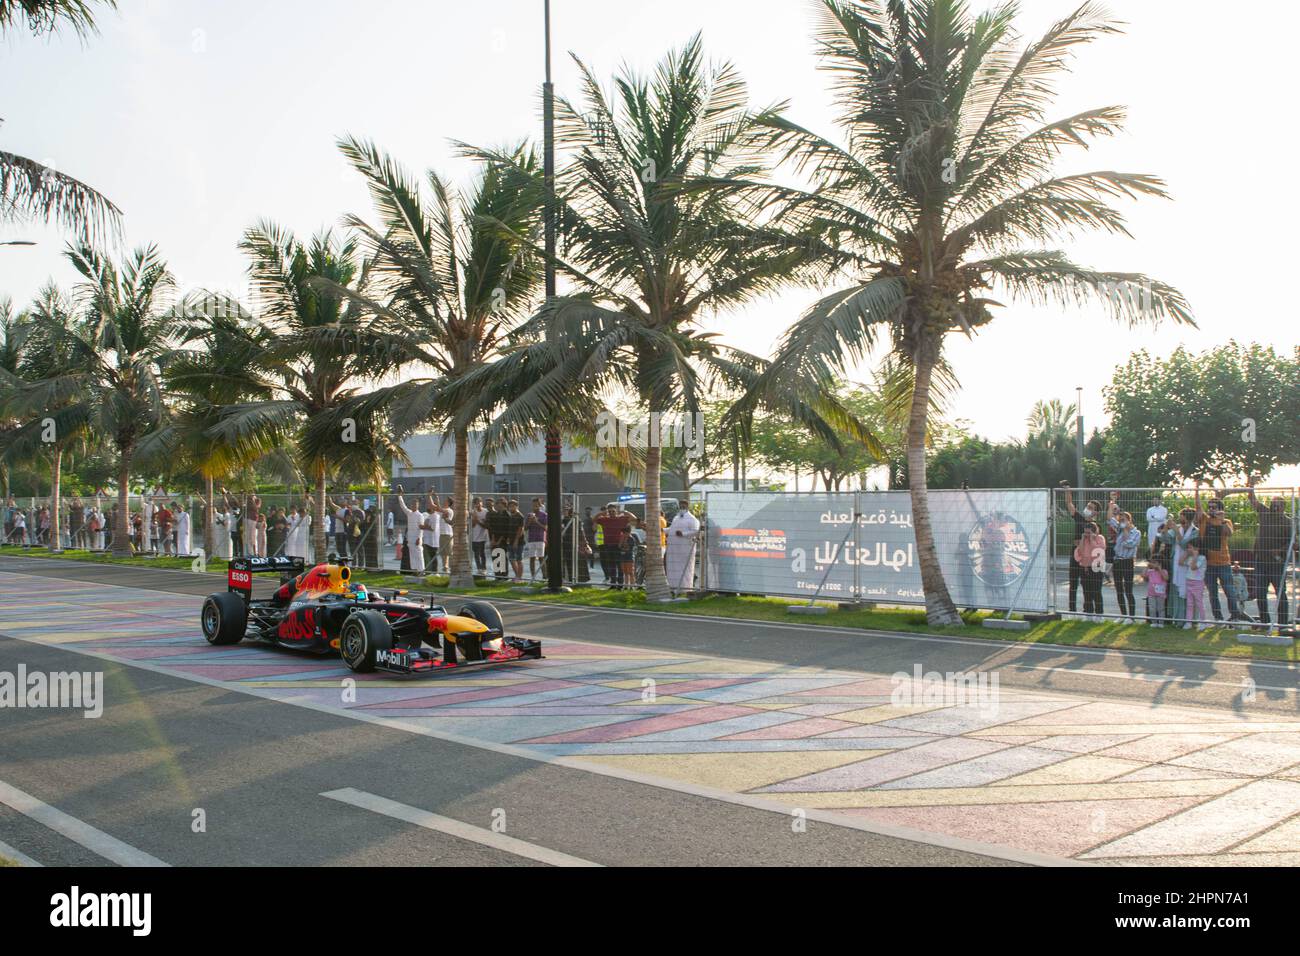 redbull f1 car in saudi Stock Photo